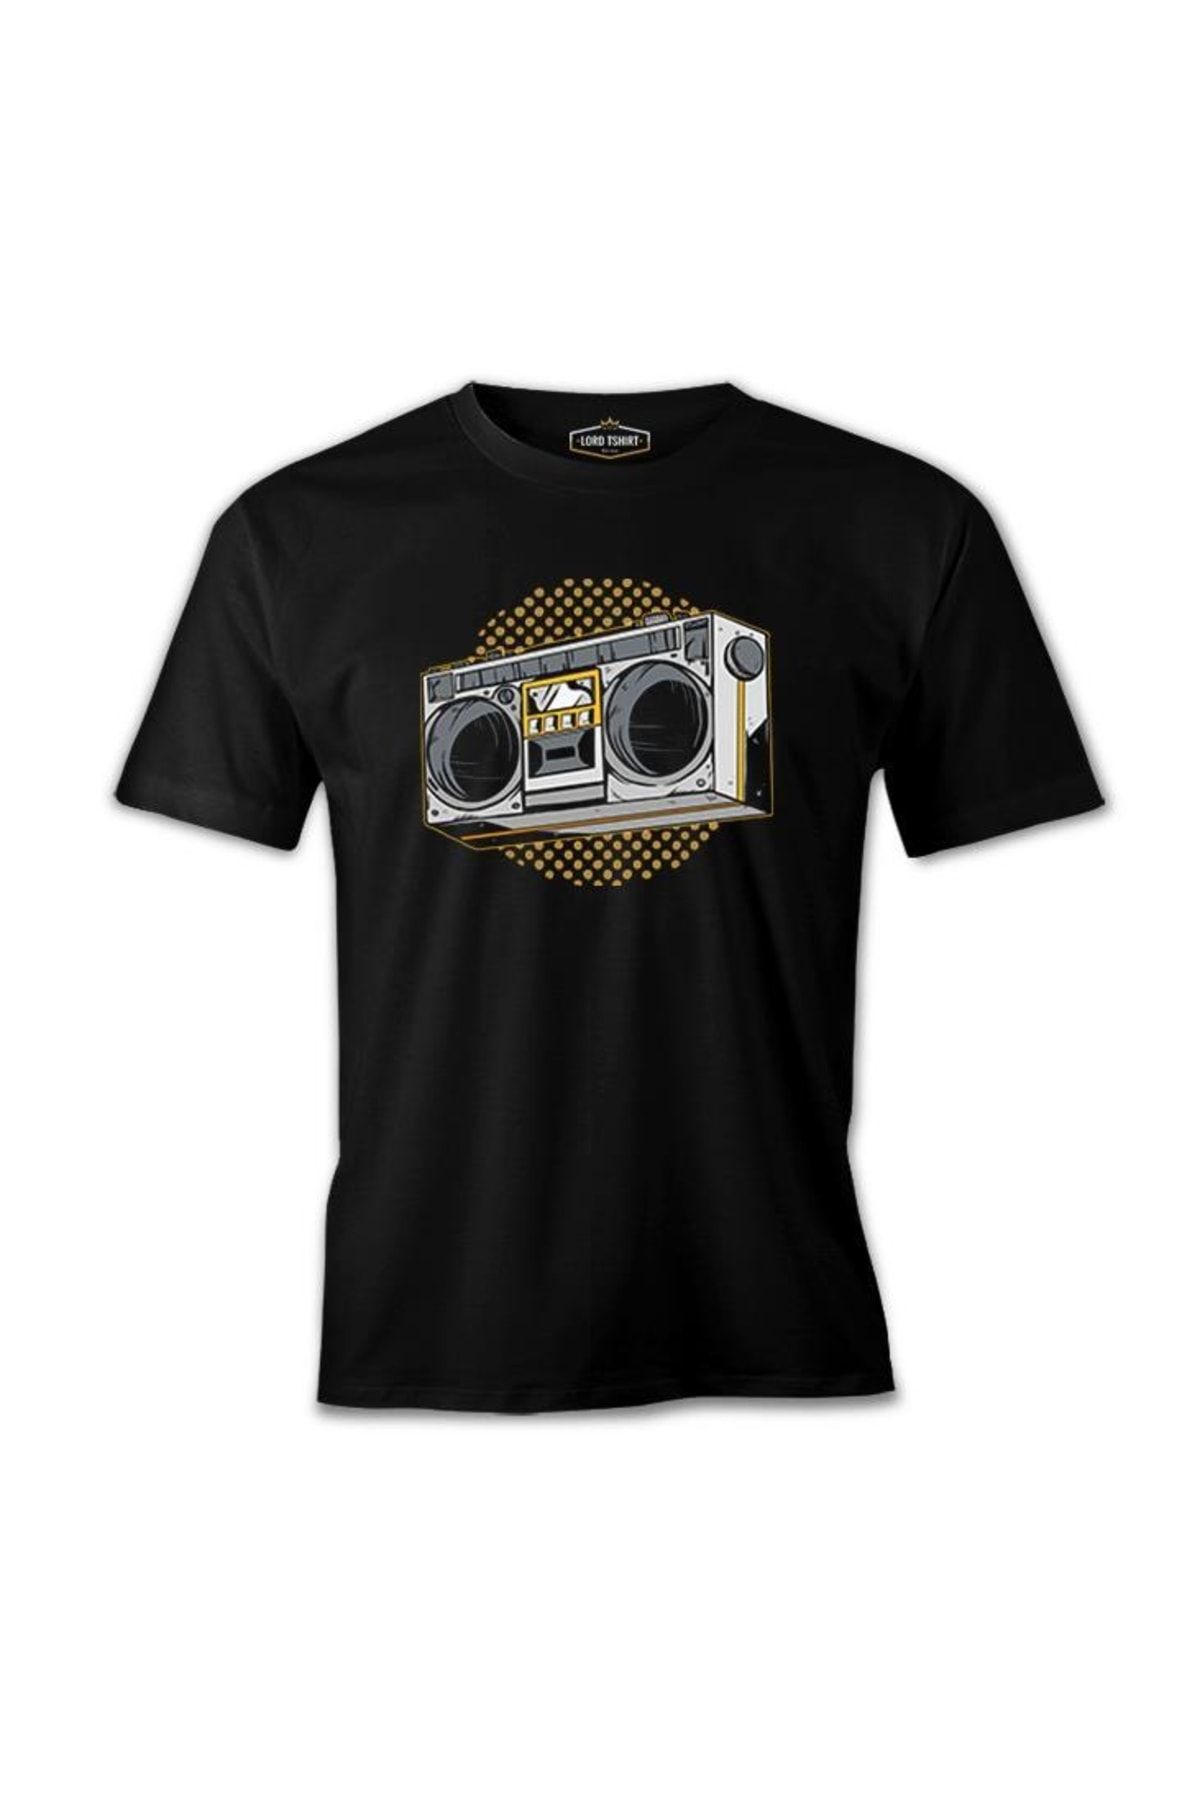 Lord T-Shirt Retro 80's Radio Siyah Erkek Tshirt